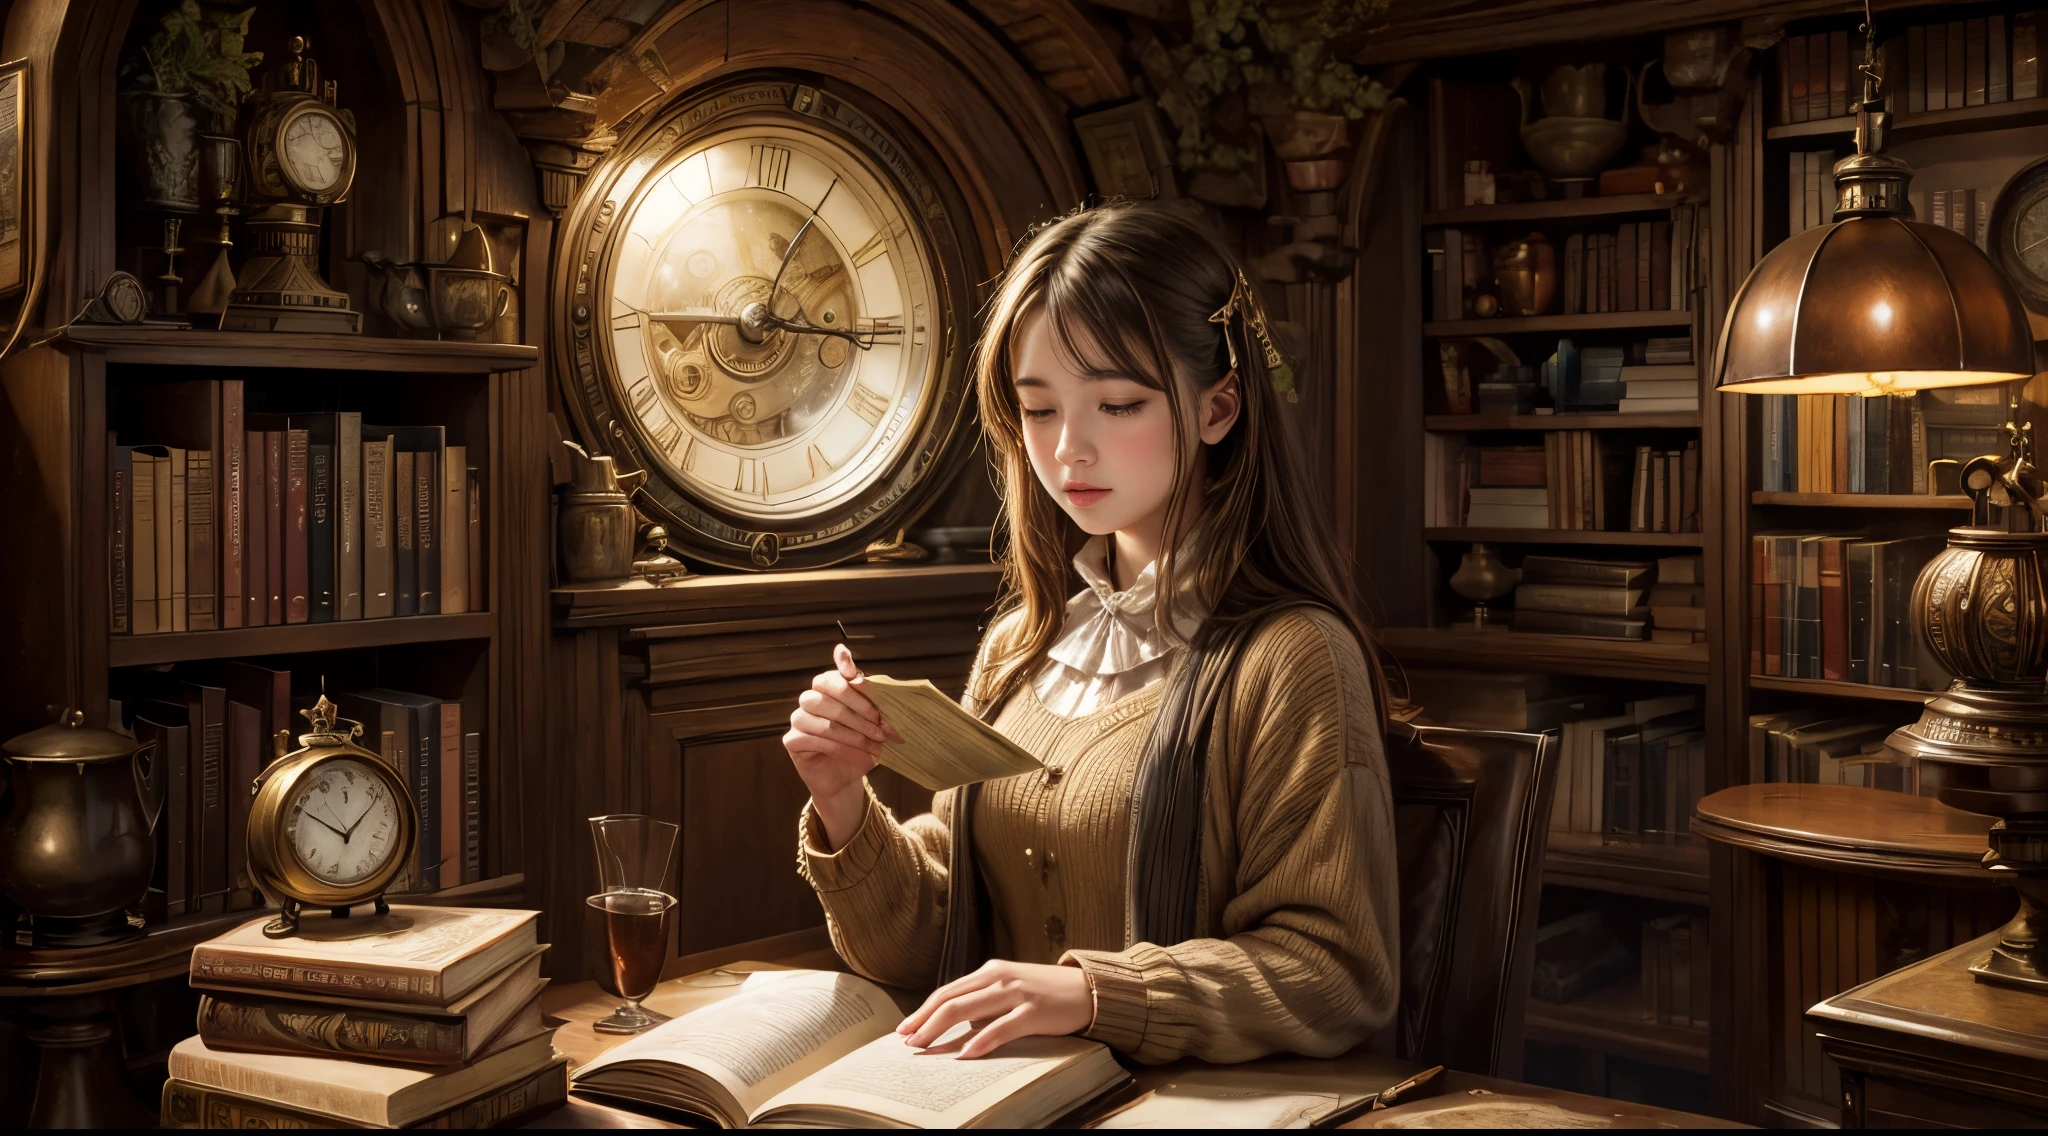 "Fotorealistische Malerei, ((Fesselnd)) Szene mit einem Mädchen, das in die Lektüre vertieft ist, antike Bücher, gemütliche Hobbithöhle, komplizierte Uhr mit beweglichen Zahnrädern, ((nostalgisch)), ausführlich, warm palette"